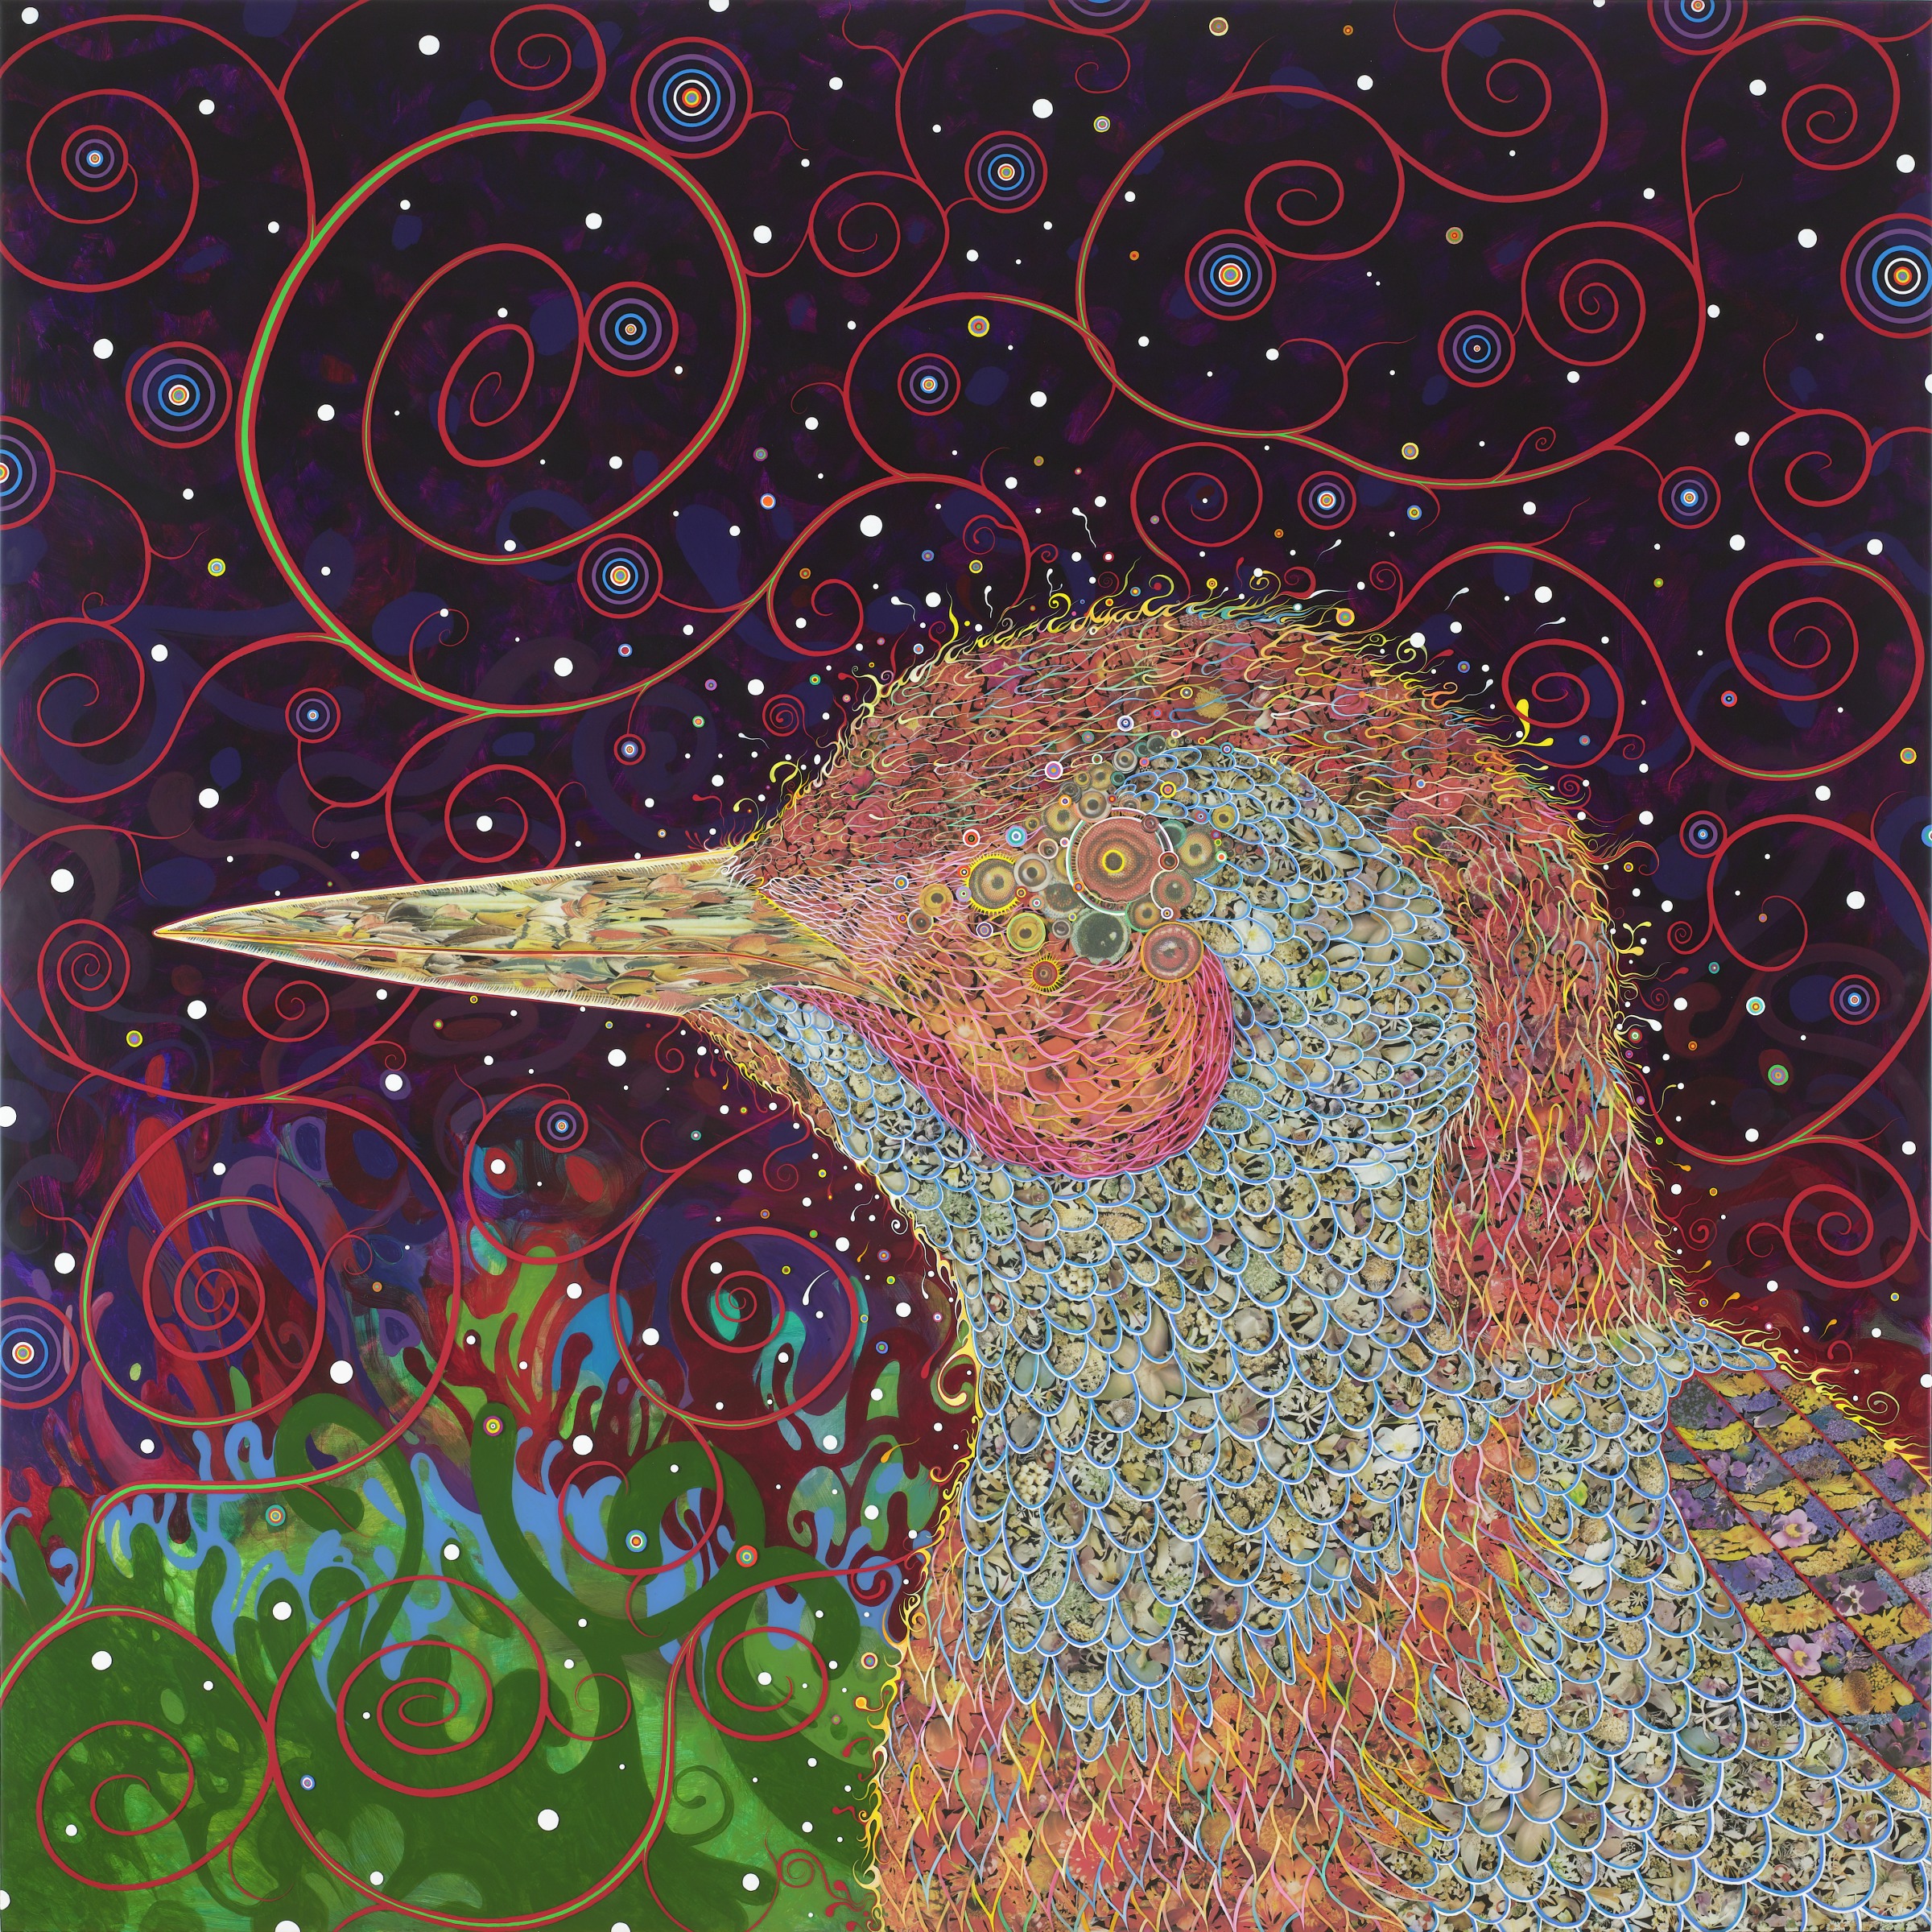 Los Ojos Pequeños Miran: Pájaro carpintero, de Fred Tomaselli